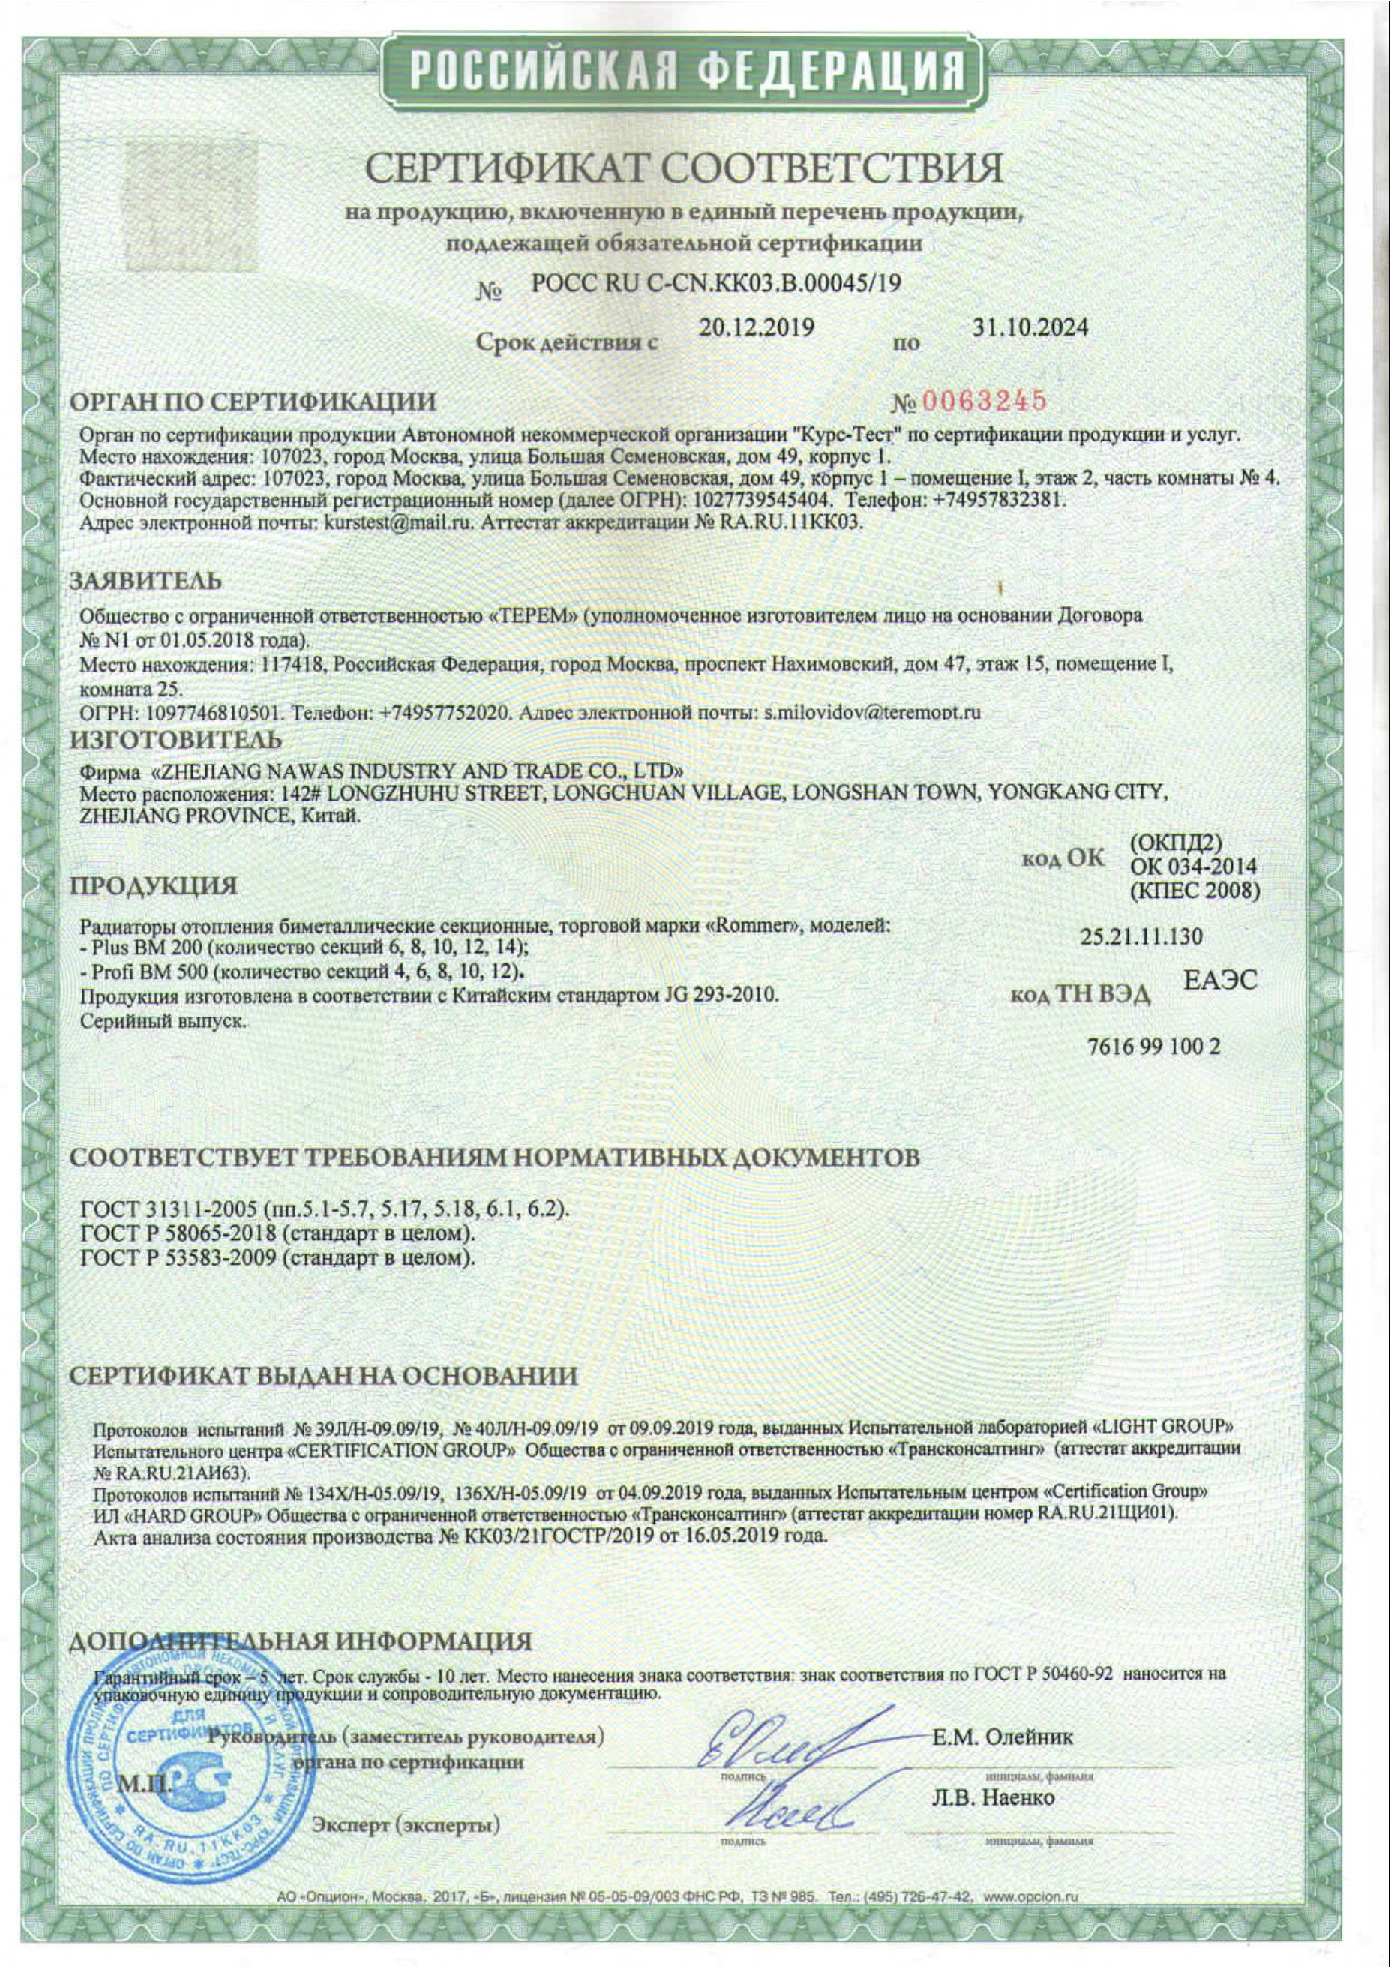 Сертификат соответствия PLUS BM 200 PROFI BM 500